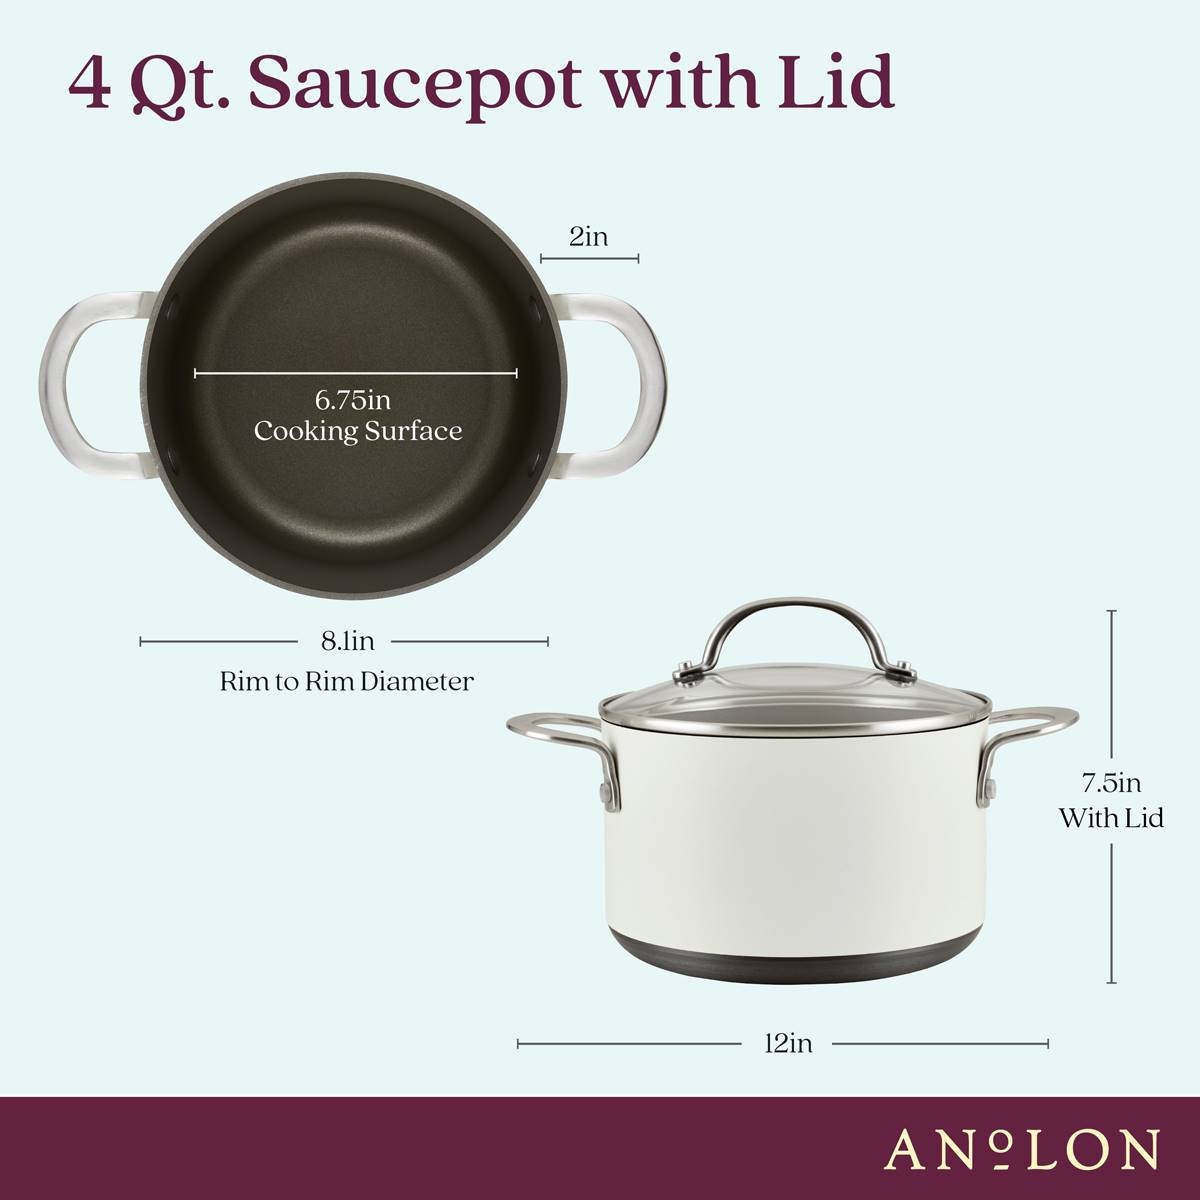 Anolon(R) Achieve Hard Anodized Nonstick 4qt. Saucepot